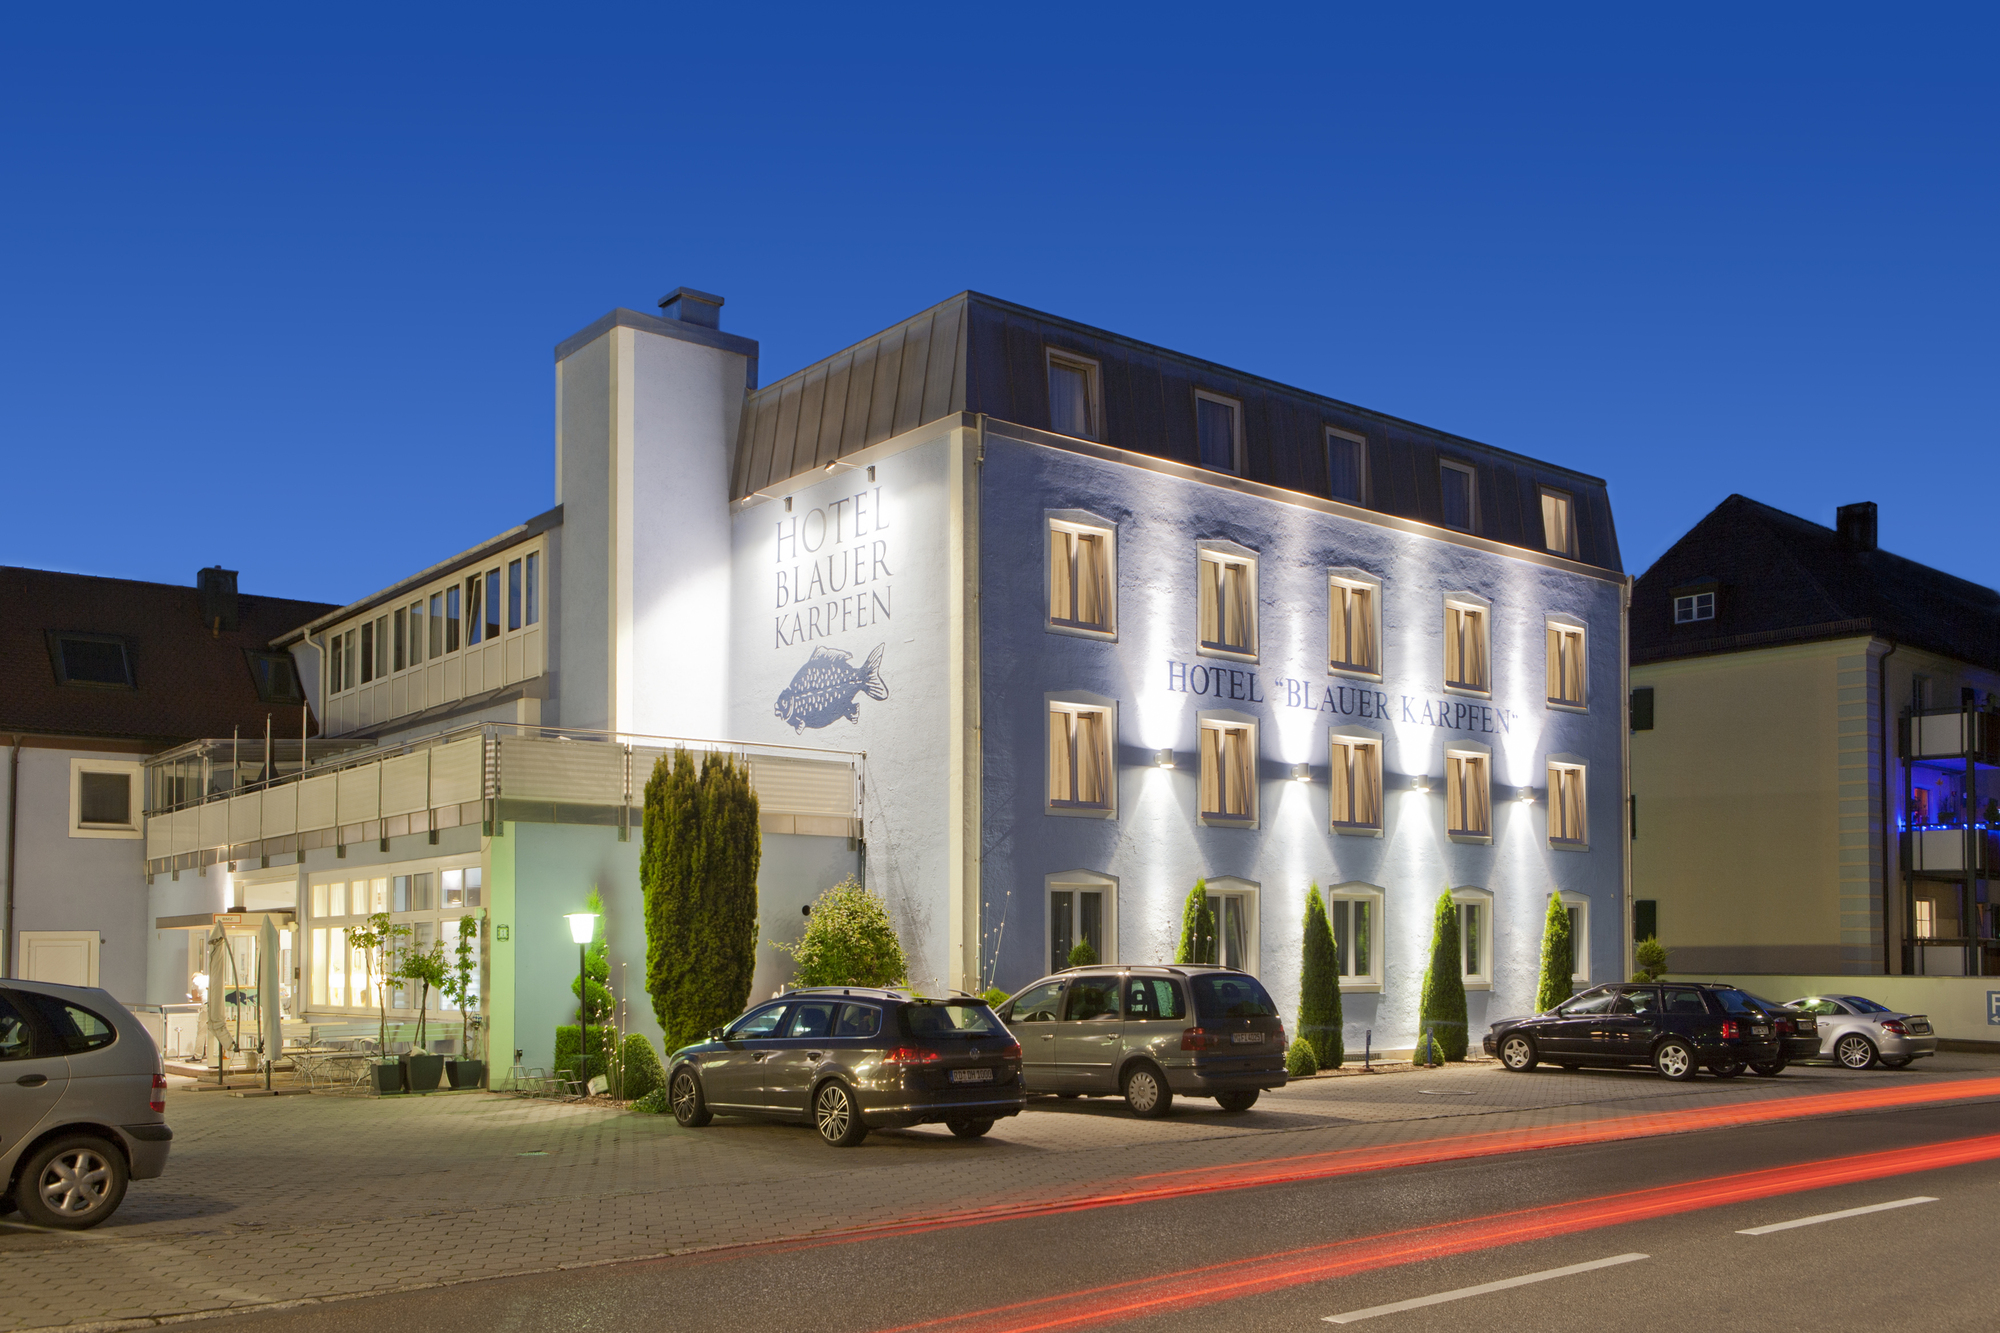 Hotel blauer Karpfen, Oberschleißheim bei München nähe der Allianz Arena